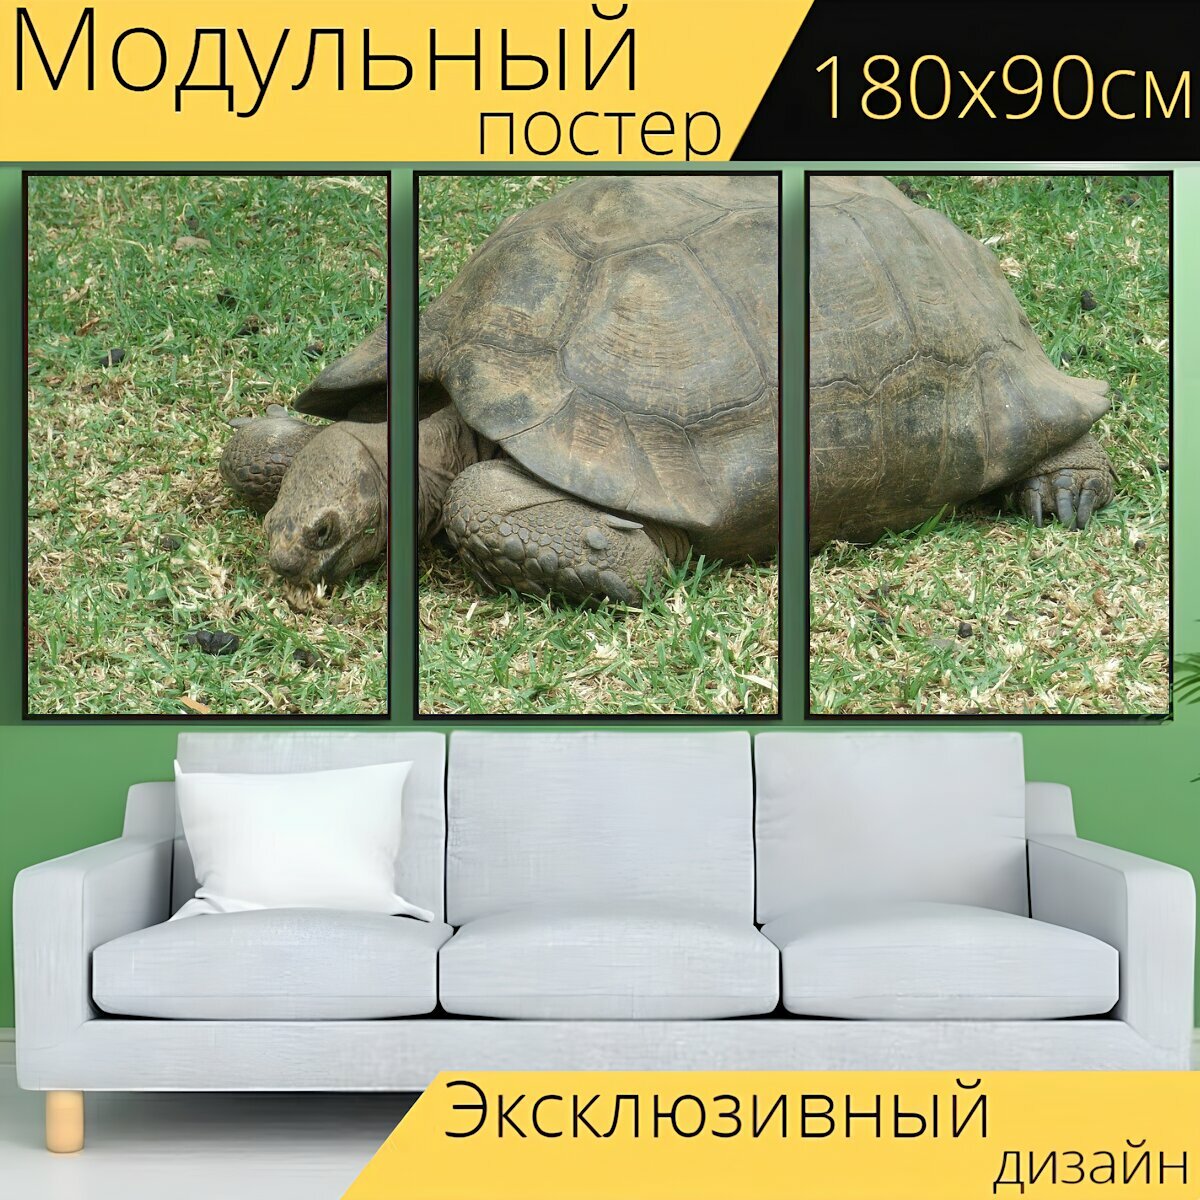 Модульный постер "Черепаха, природа, животное" 180 x 90 см. для интерьера